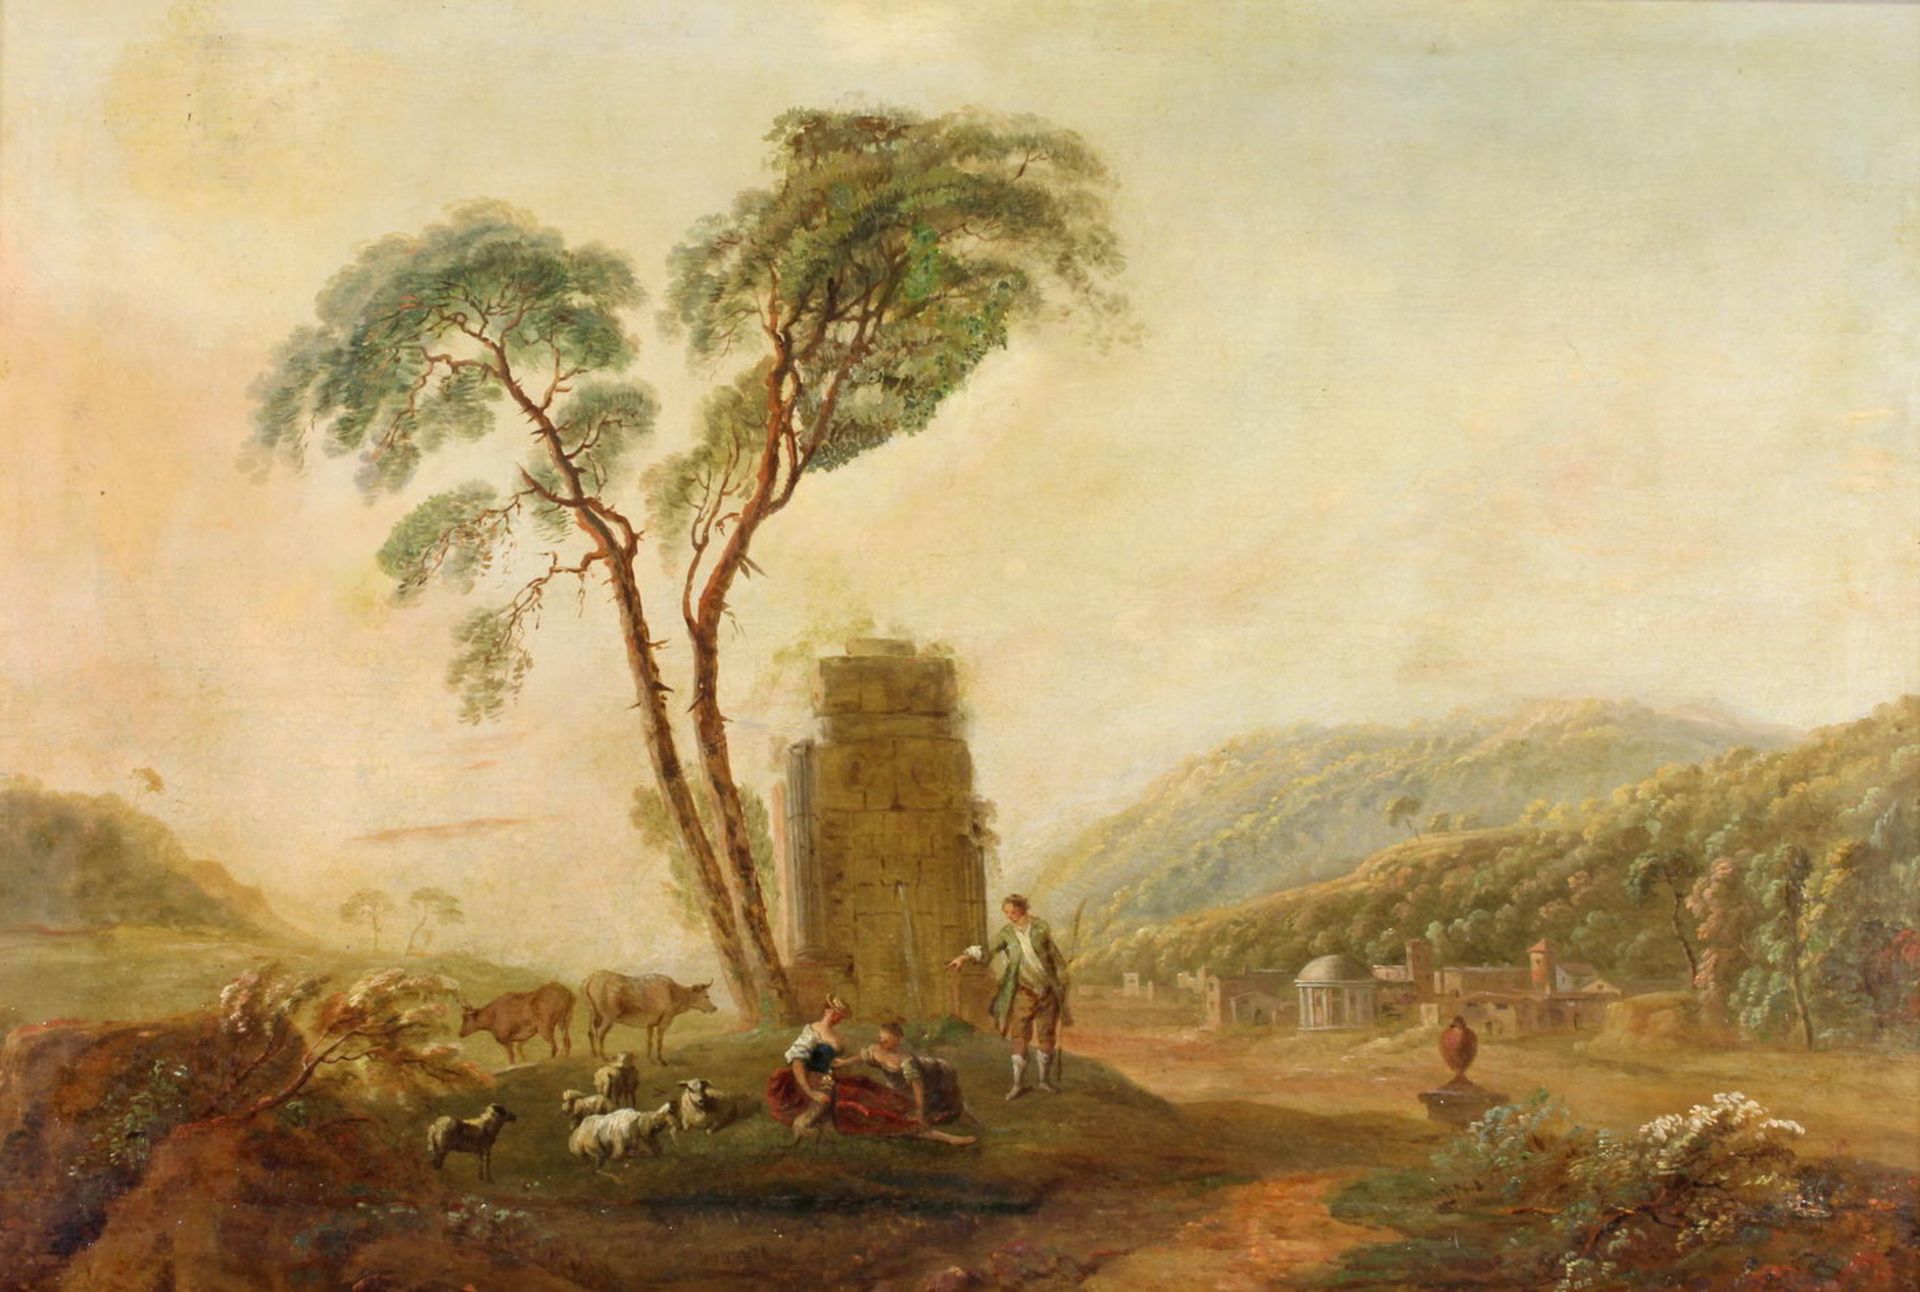 Landschaftsmaler (18./19. Jh.), "Arkadische Landschaft mit Hirten vor Ruine", Öl auf Leinwand, sig